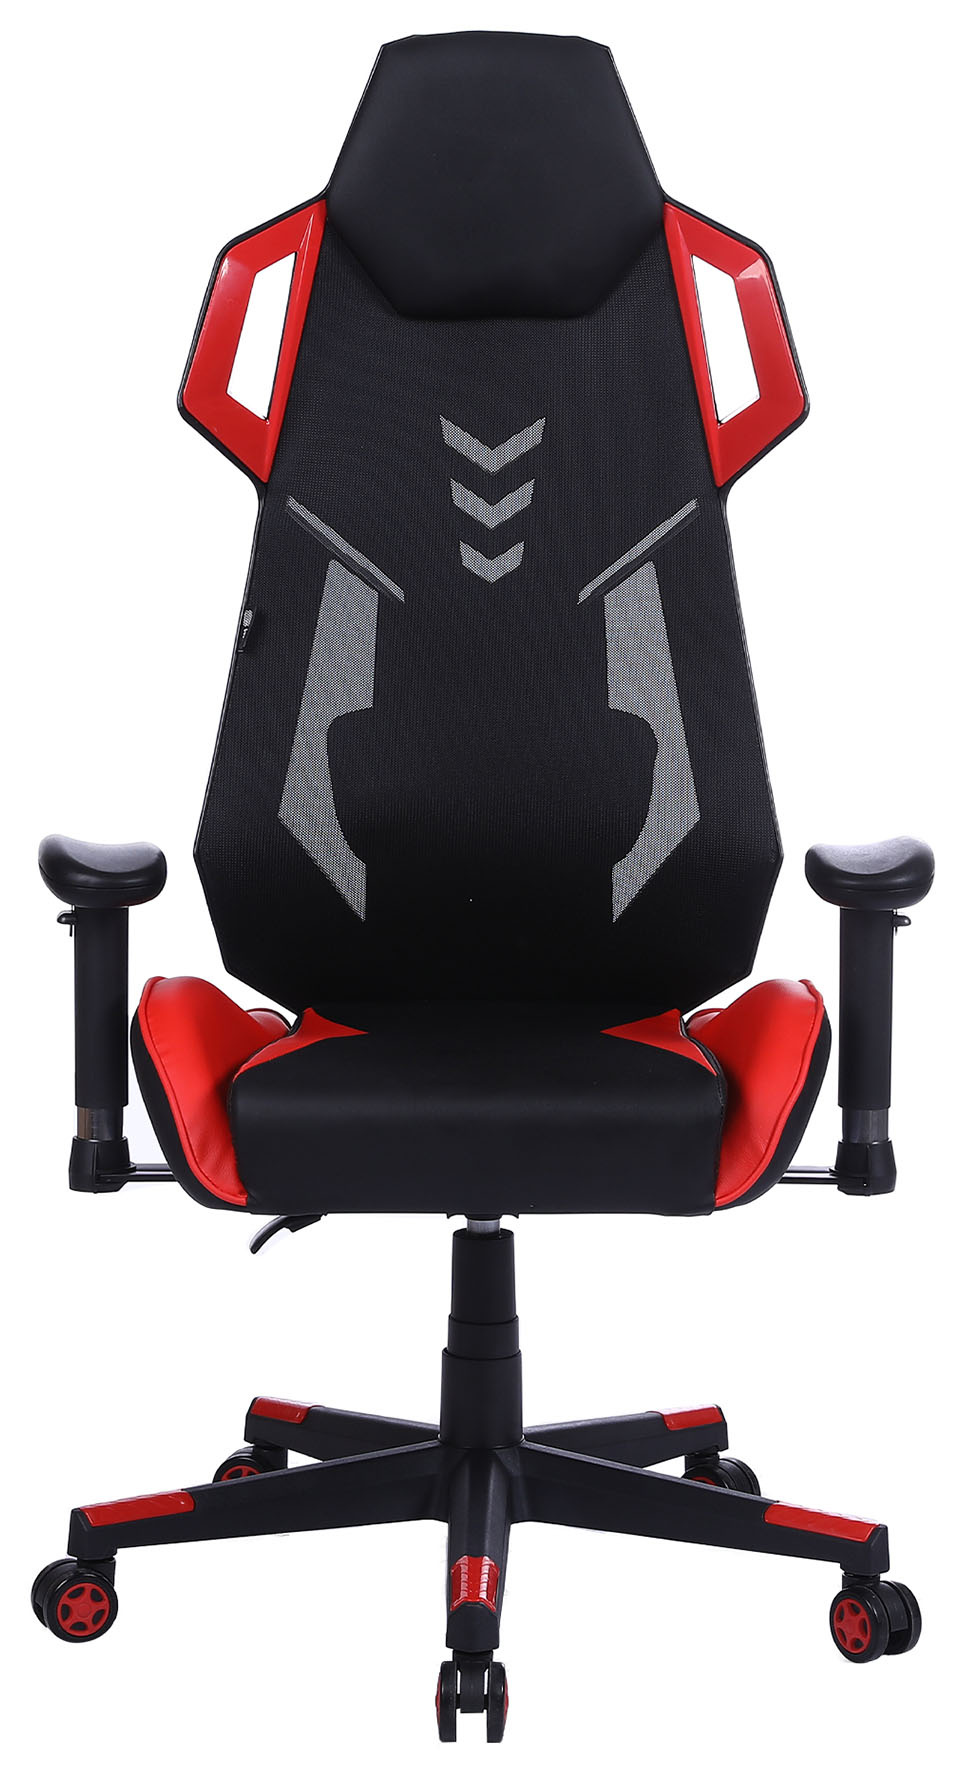 Кресло игровое Cactus CS-CHR-090BLR черный/красный сиденье черный/красный эко.кожа/сетка крестовина пластик пластик черный 